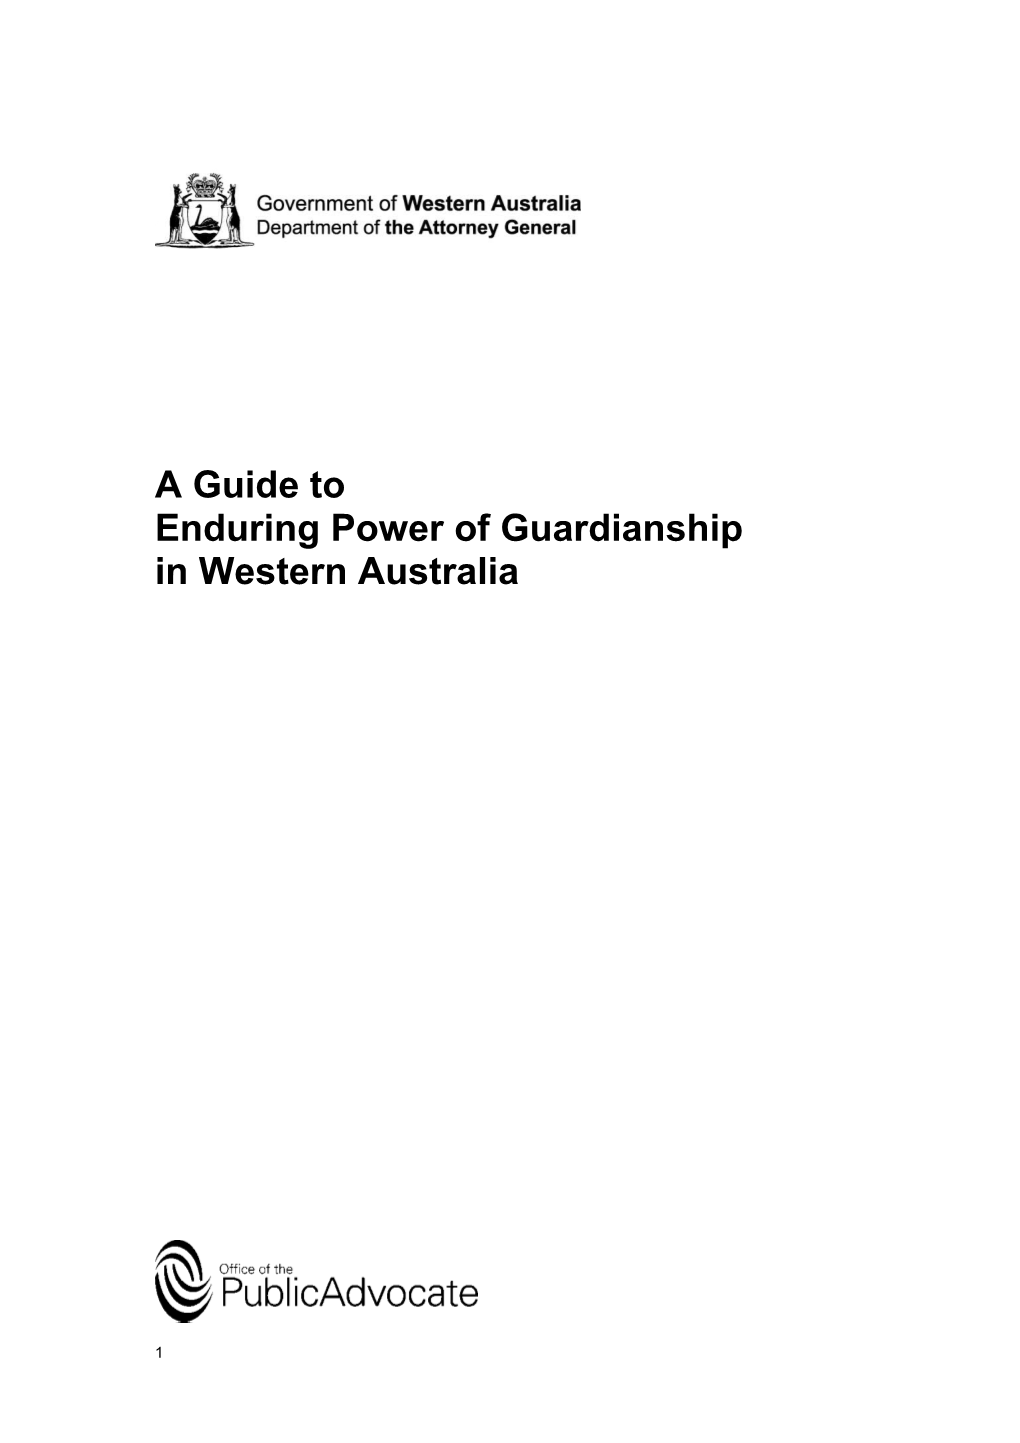 Enduring Power of Guardianship